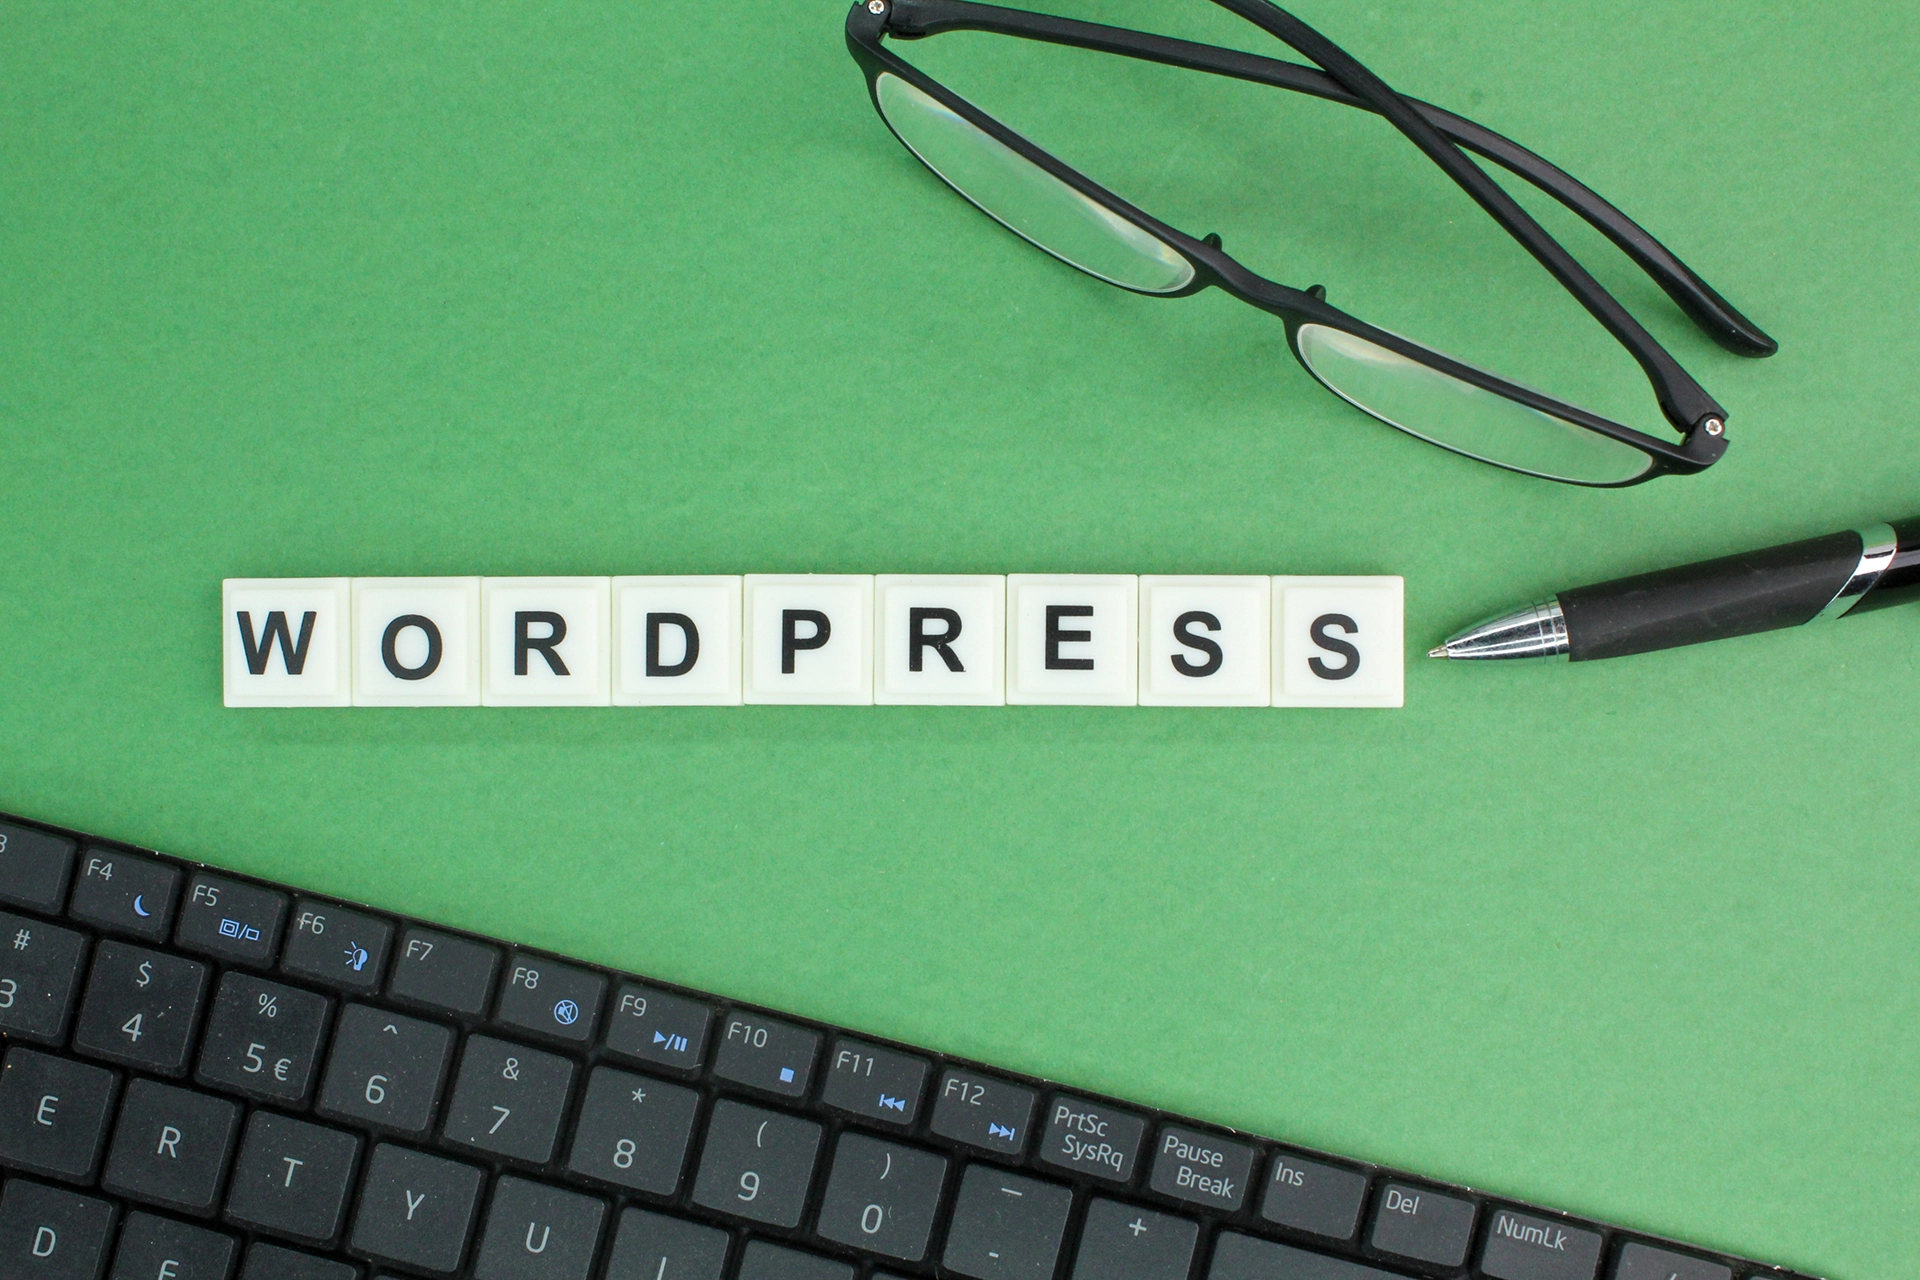 WordPress site kurulumu konusunda bilgilendirici görsel, klavyenin üzerinde 'WORDPRESS' yazan blok harfler ve bir çift gözlük